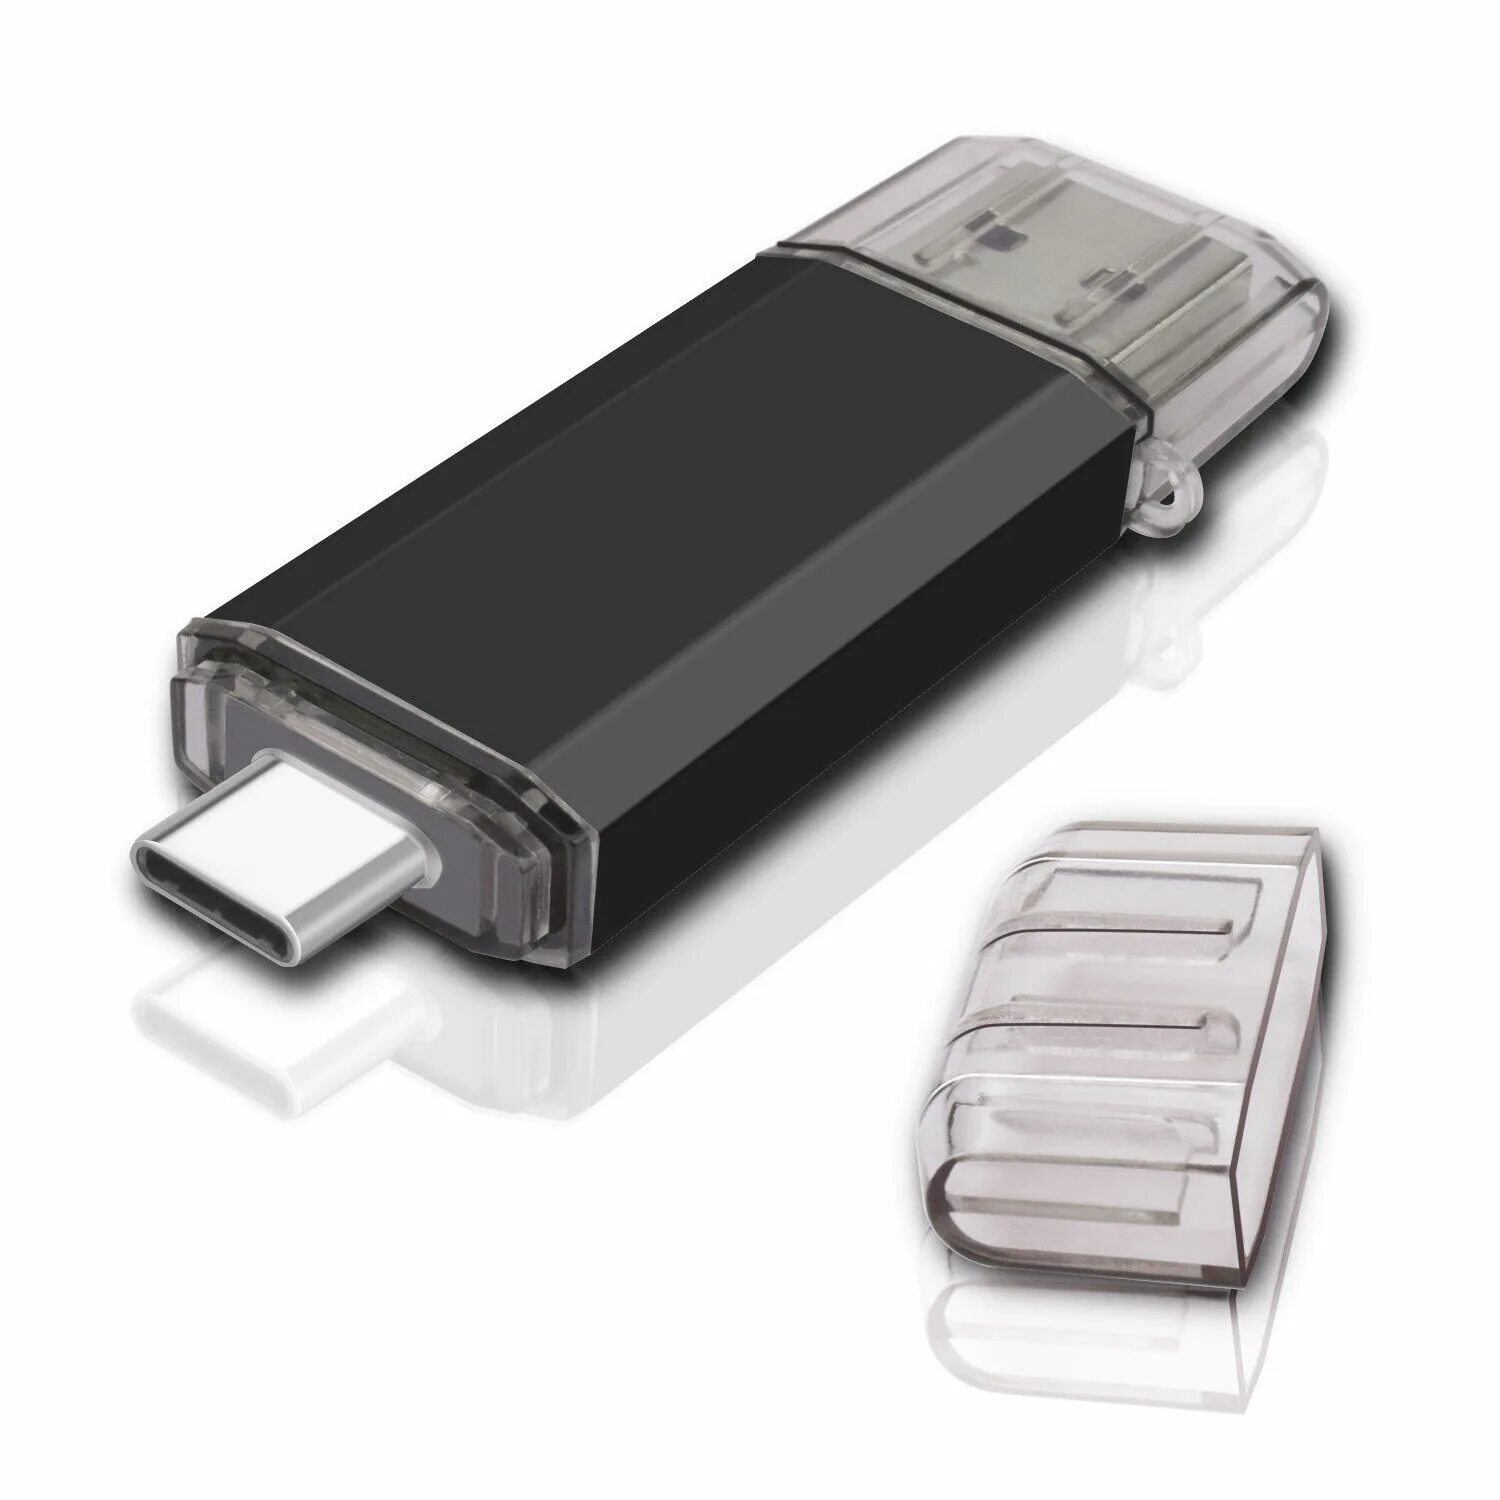 Самсунг флешка память. Флешка самсунг USB Type c. Флешка OTG USB Type c. Флешка 64гб 3.0. Флешка 16гб USB тайп.